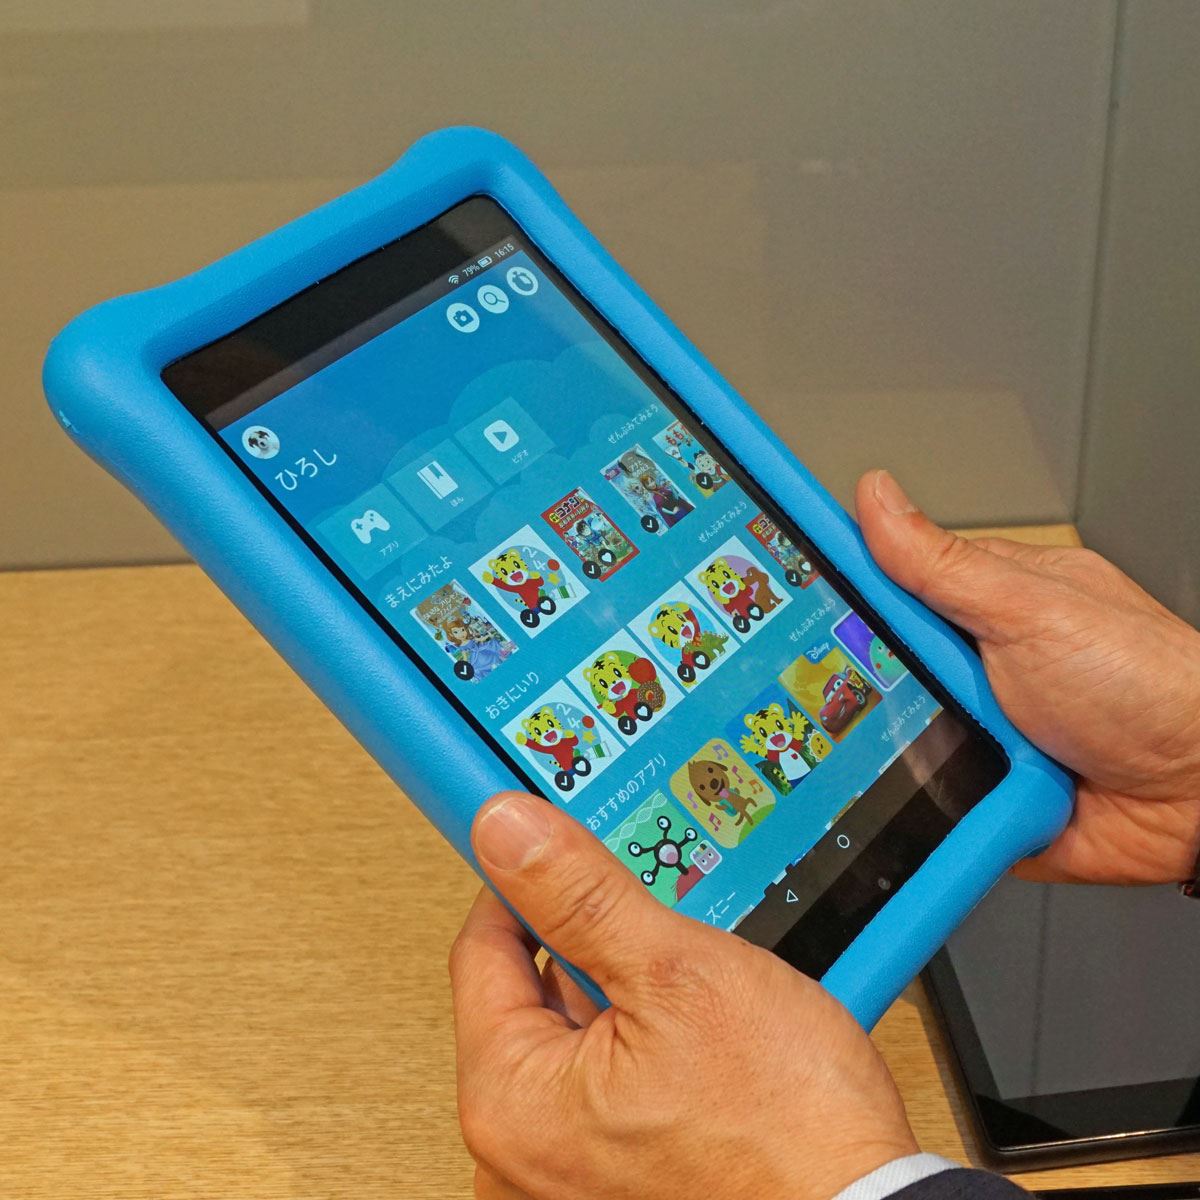 Amazonが手がけた子供向けタブレット「Fire HD 8 キッズモデル」は充実